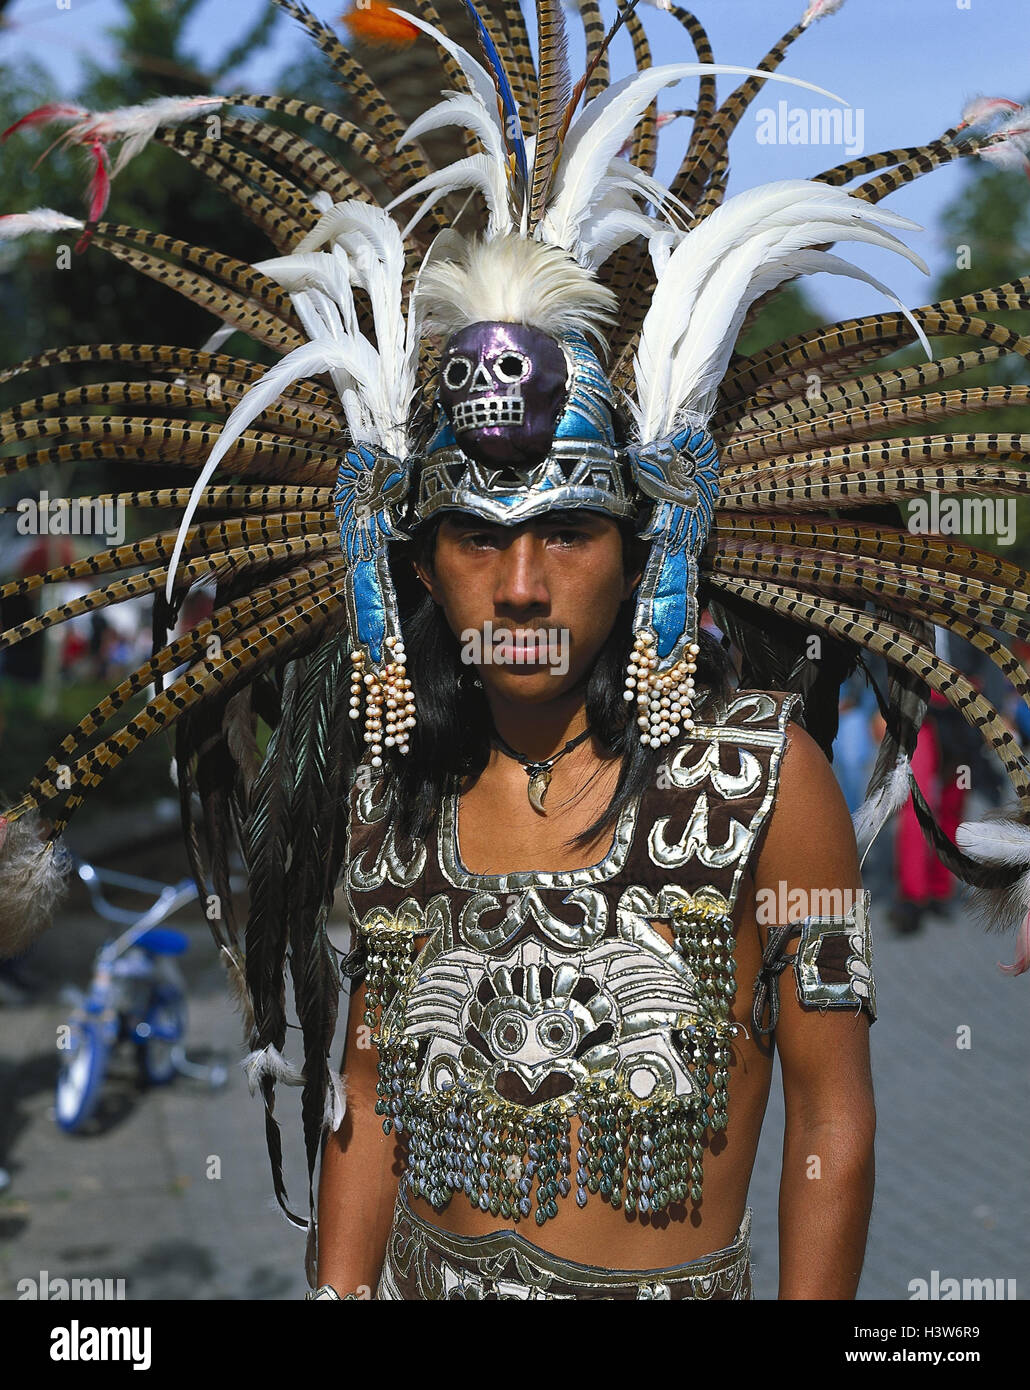 México, India, Halbportrtät, fuera, América Central, el hombre, joven, de bigote, ropa, tradicionalmente, la tradición, el folclore, la pluma, la cepa de joyería india Fotografía de stock - Alamy